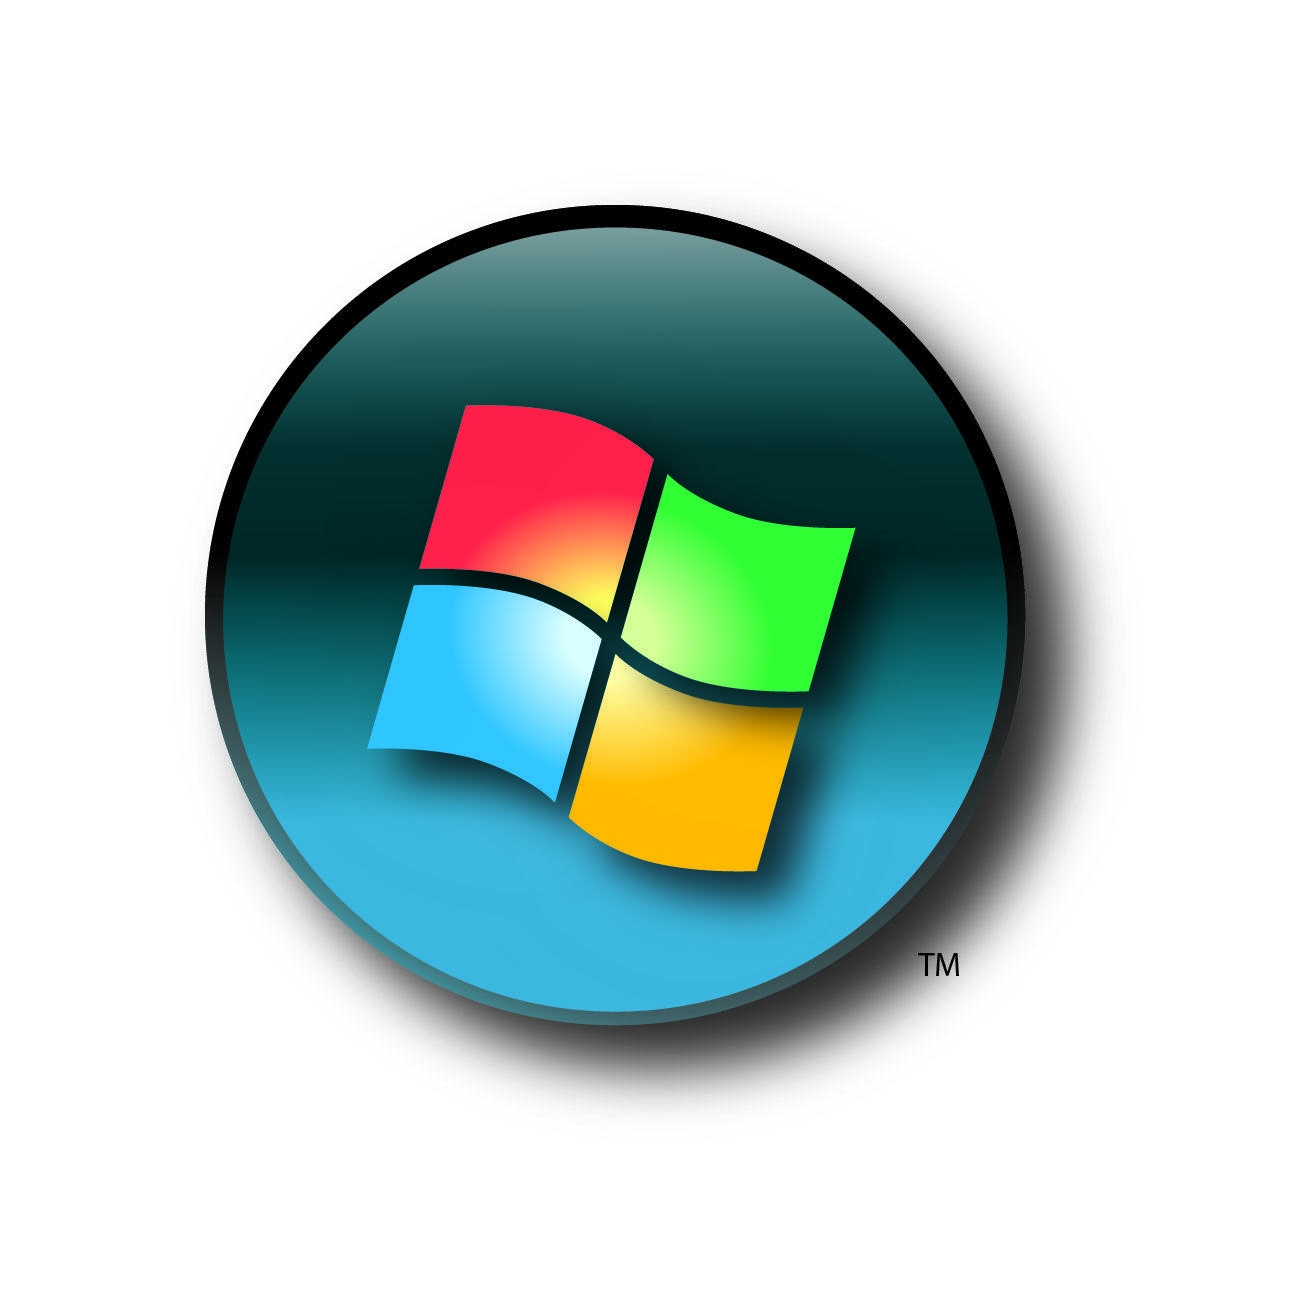 Windows 4 Logo - The gallery for > Windows 4 Logo, all windows logos - Pano